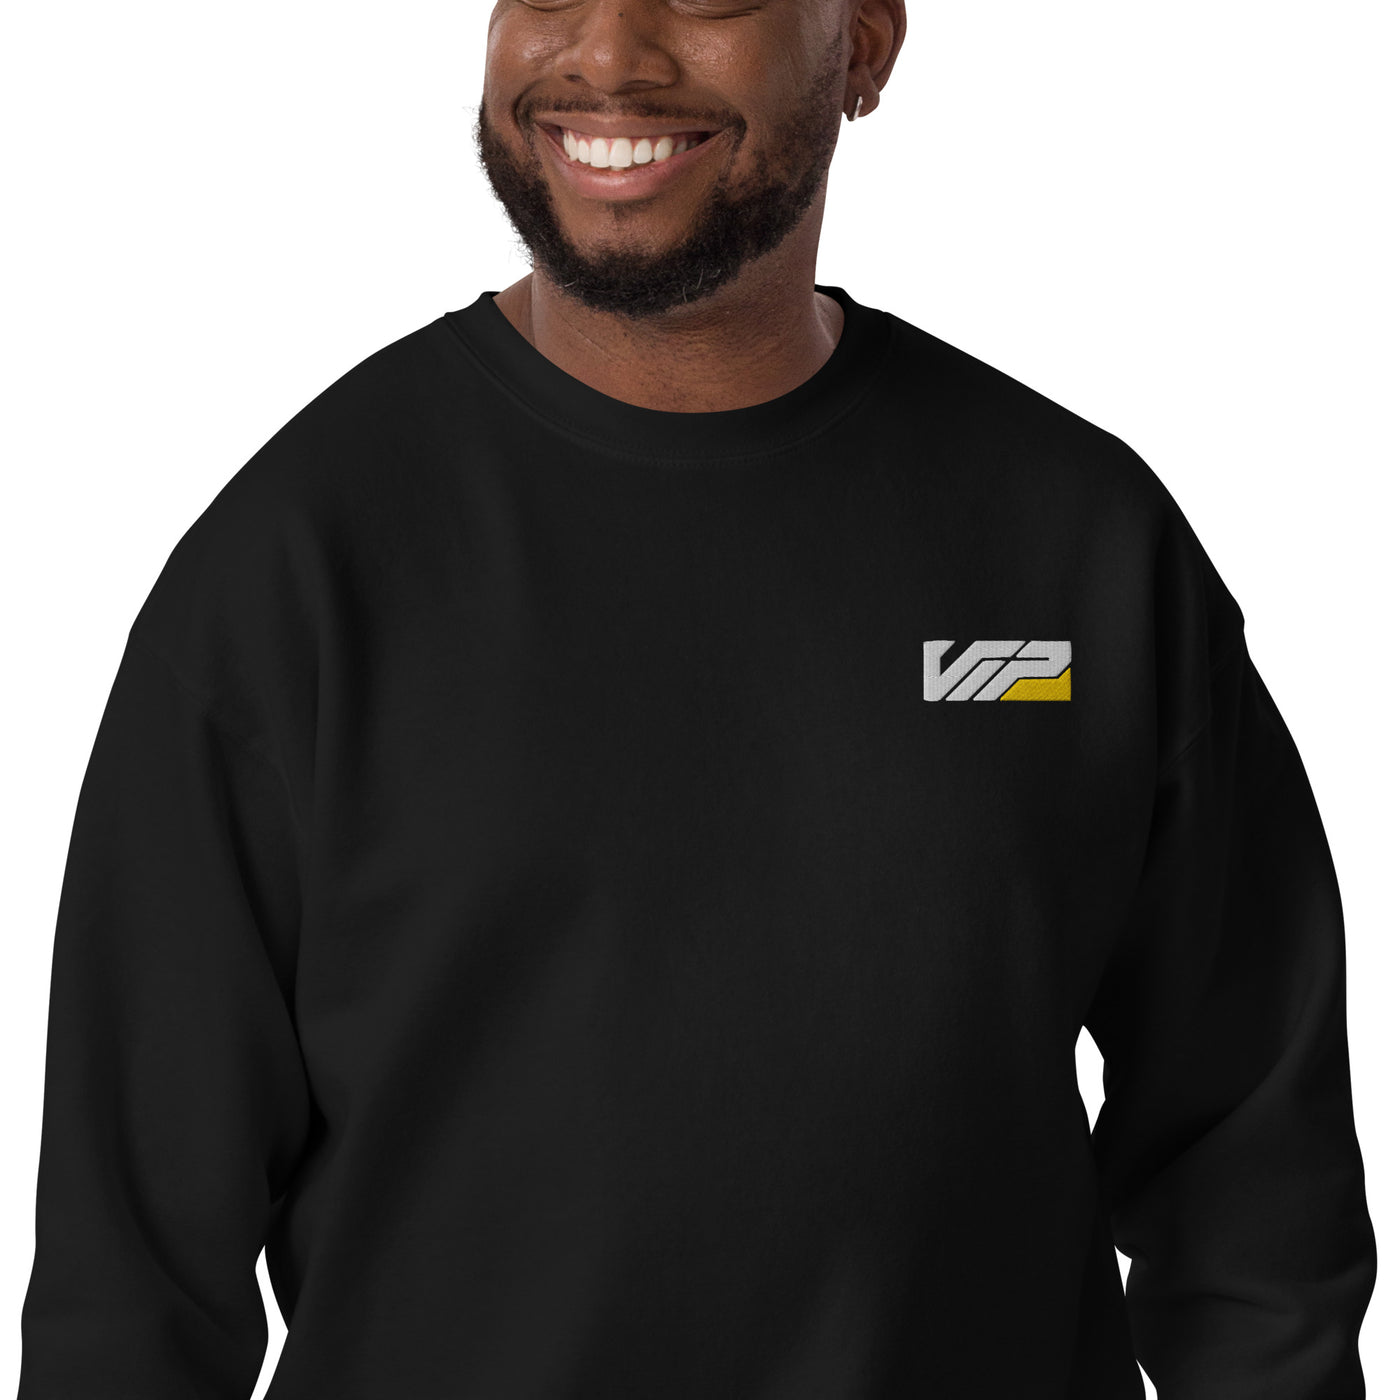 VIP Premium Sweatshirt